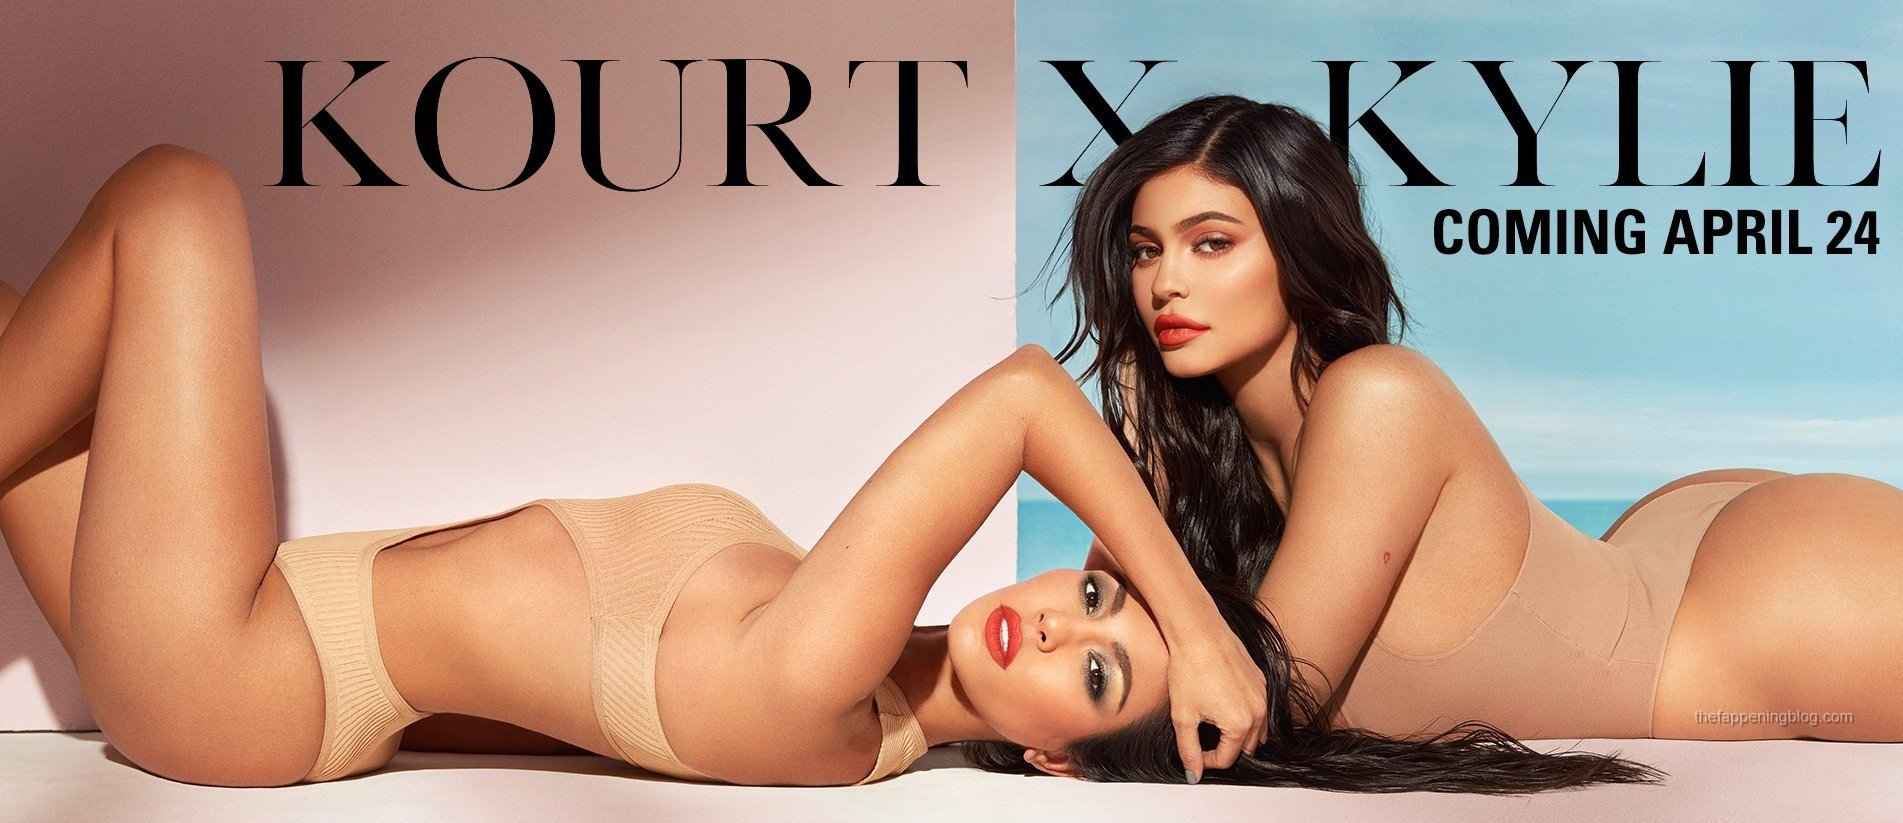 Kylie Jenner & Kourtney Kardashian Sexy (5 Photos)